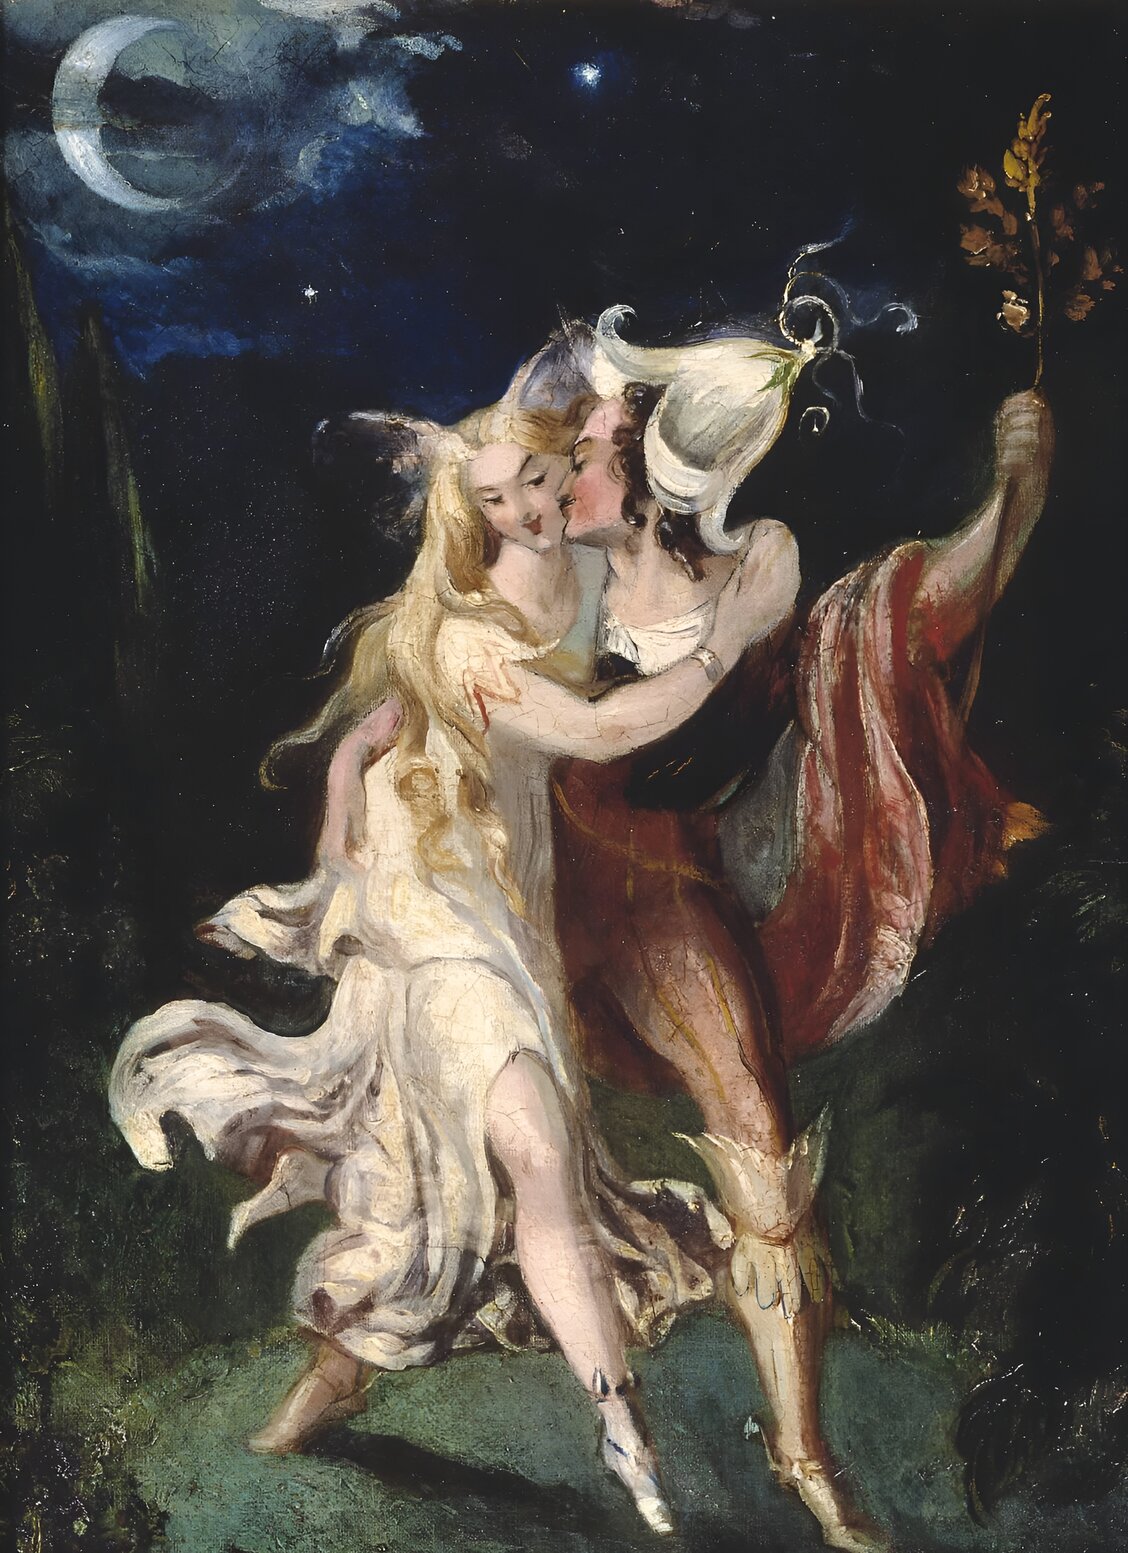 The Fairy Lovers by Theodore Von Holst, c.1840.